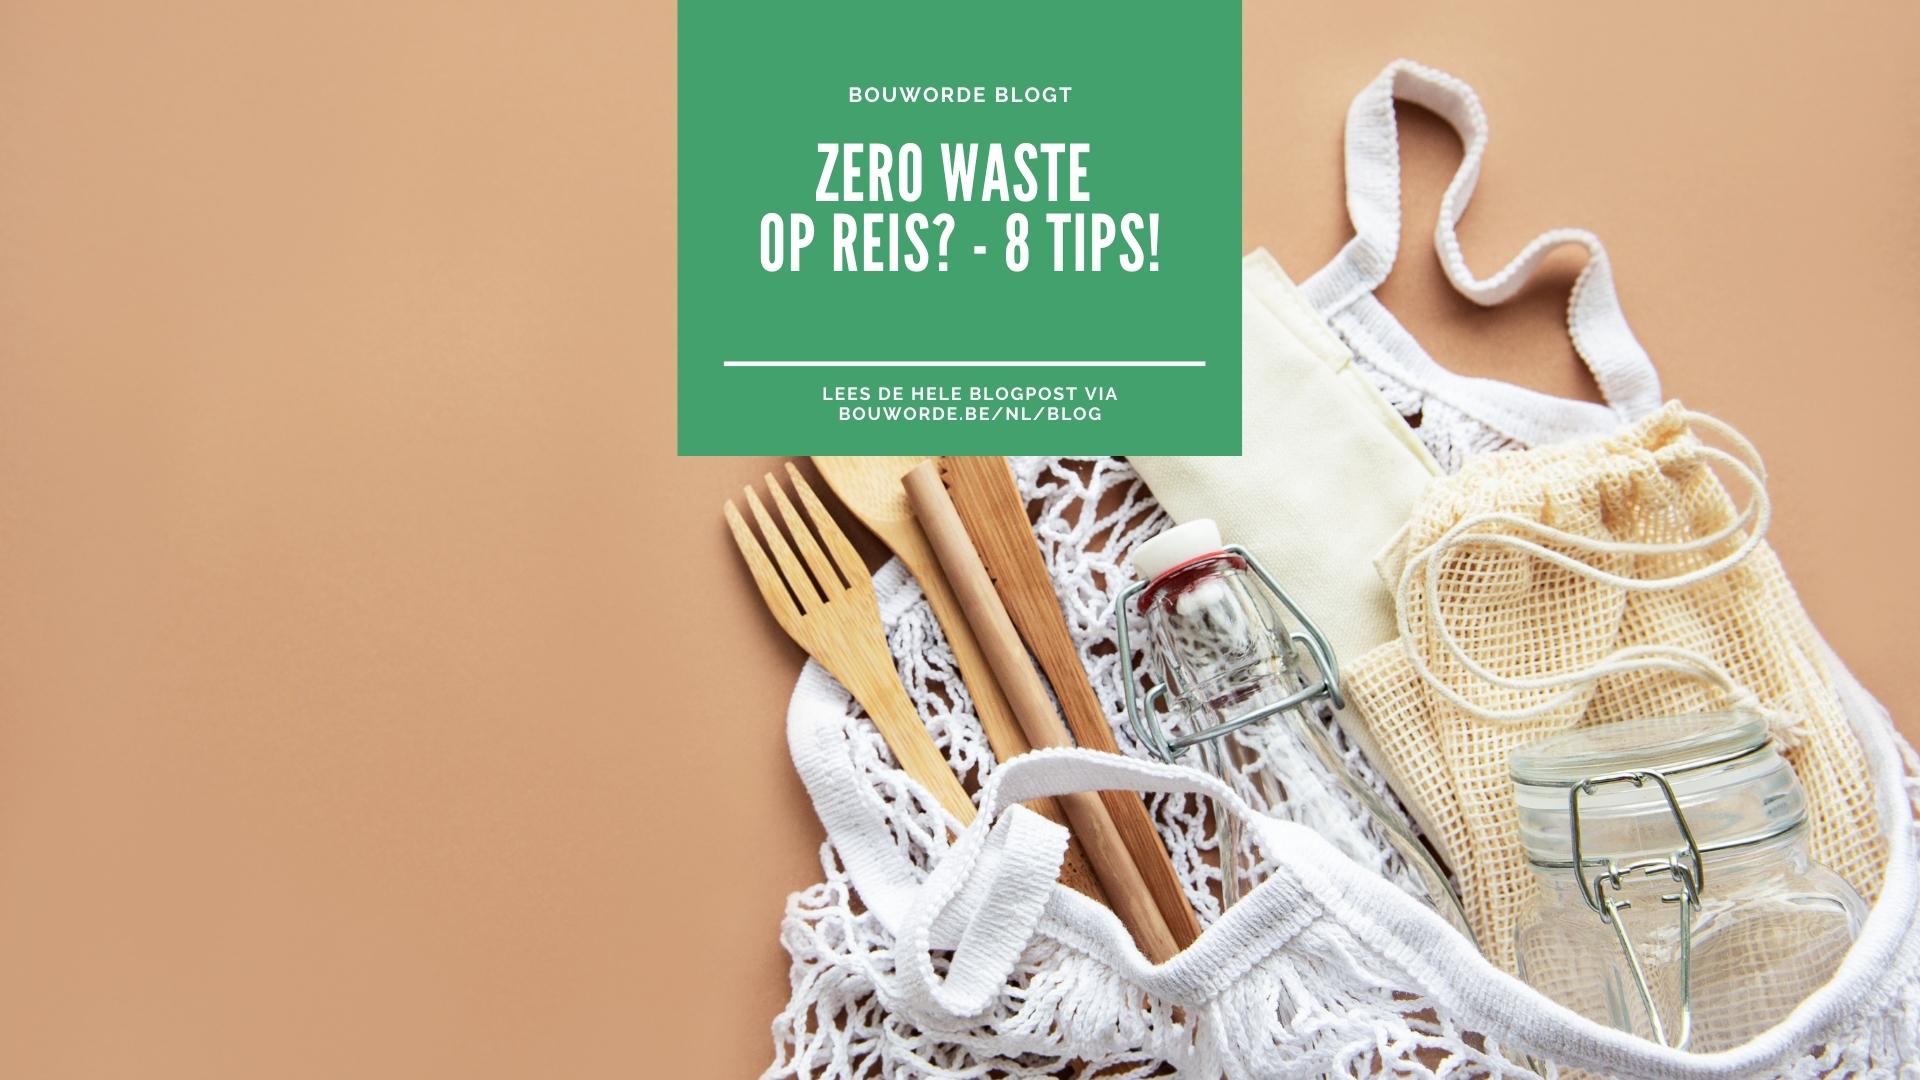 Zero Waste Op Reis 8 Tips (1)